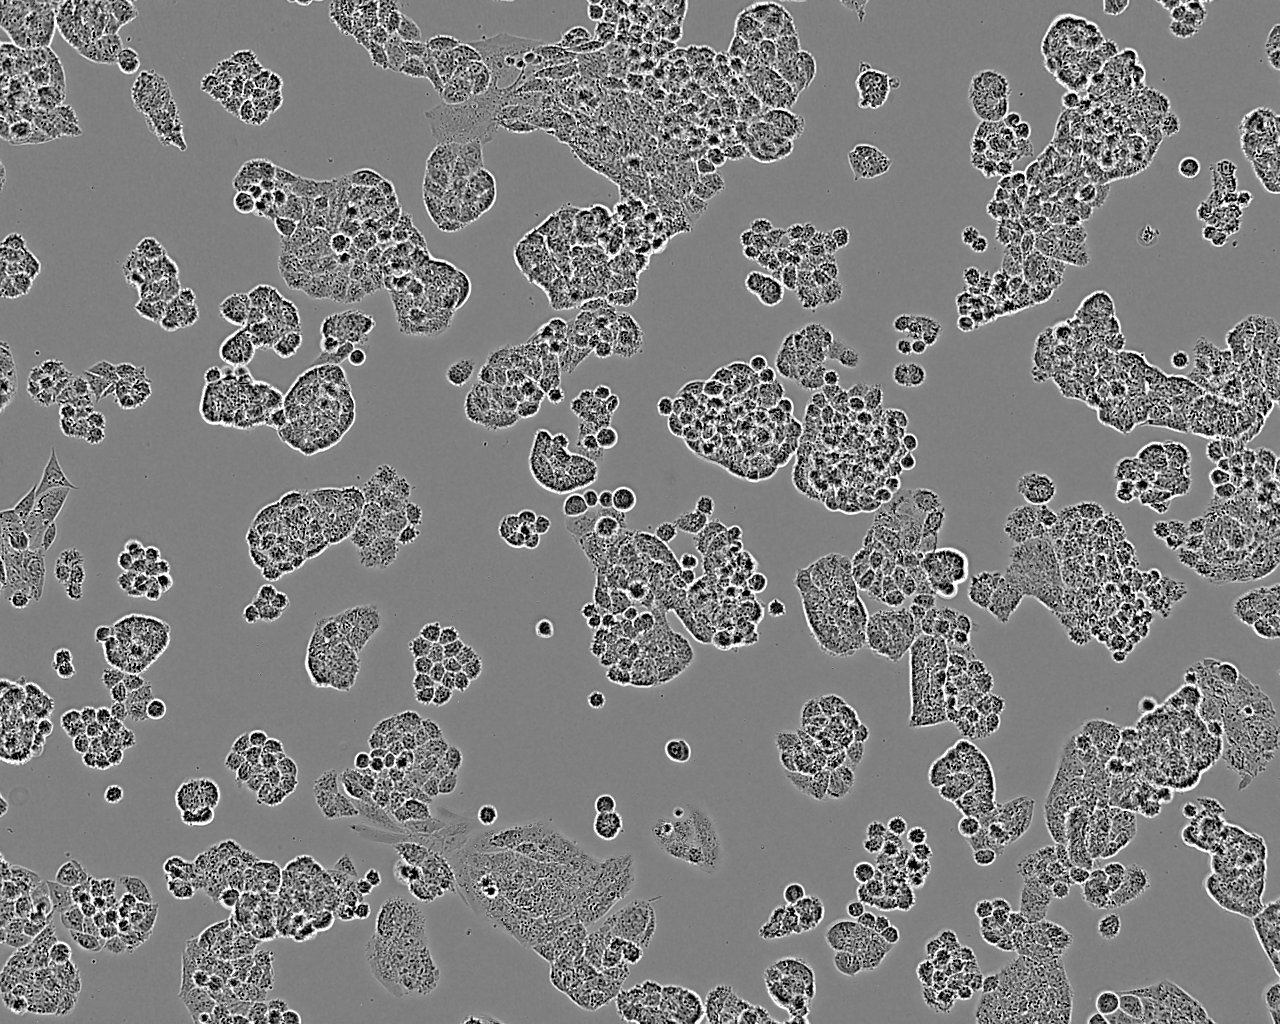 TE-4 Cell:人食管癌细胞系